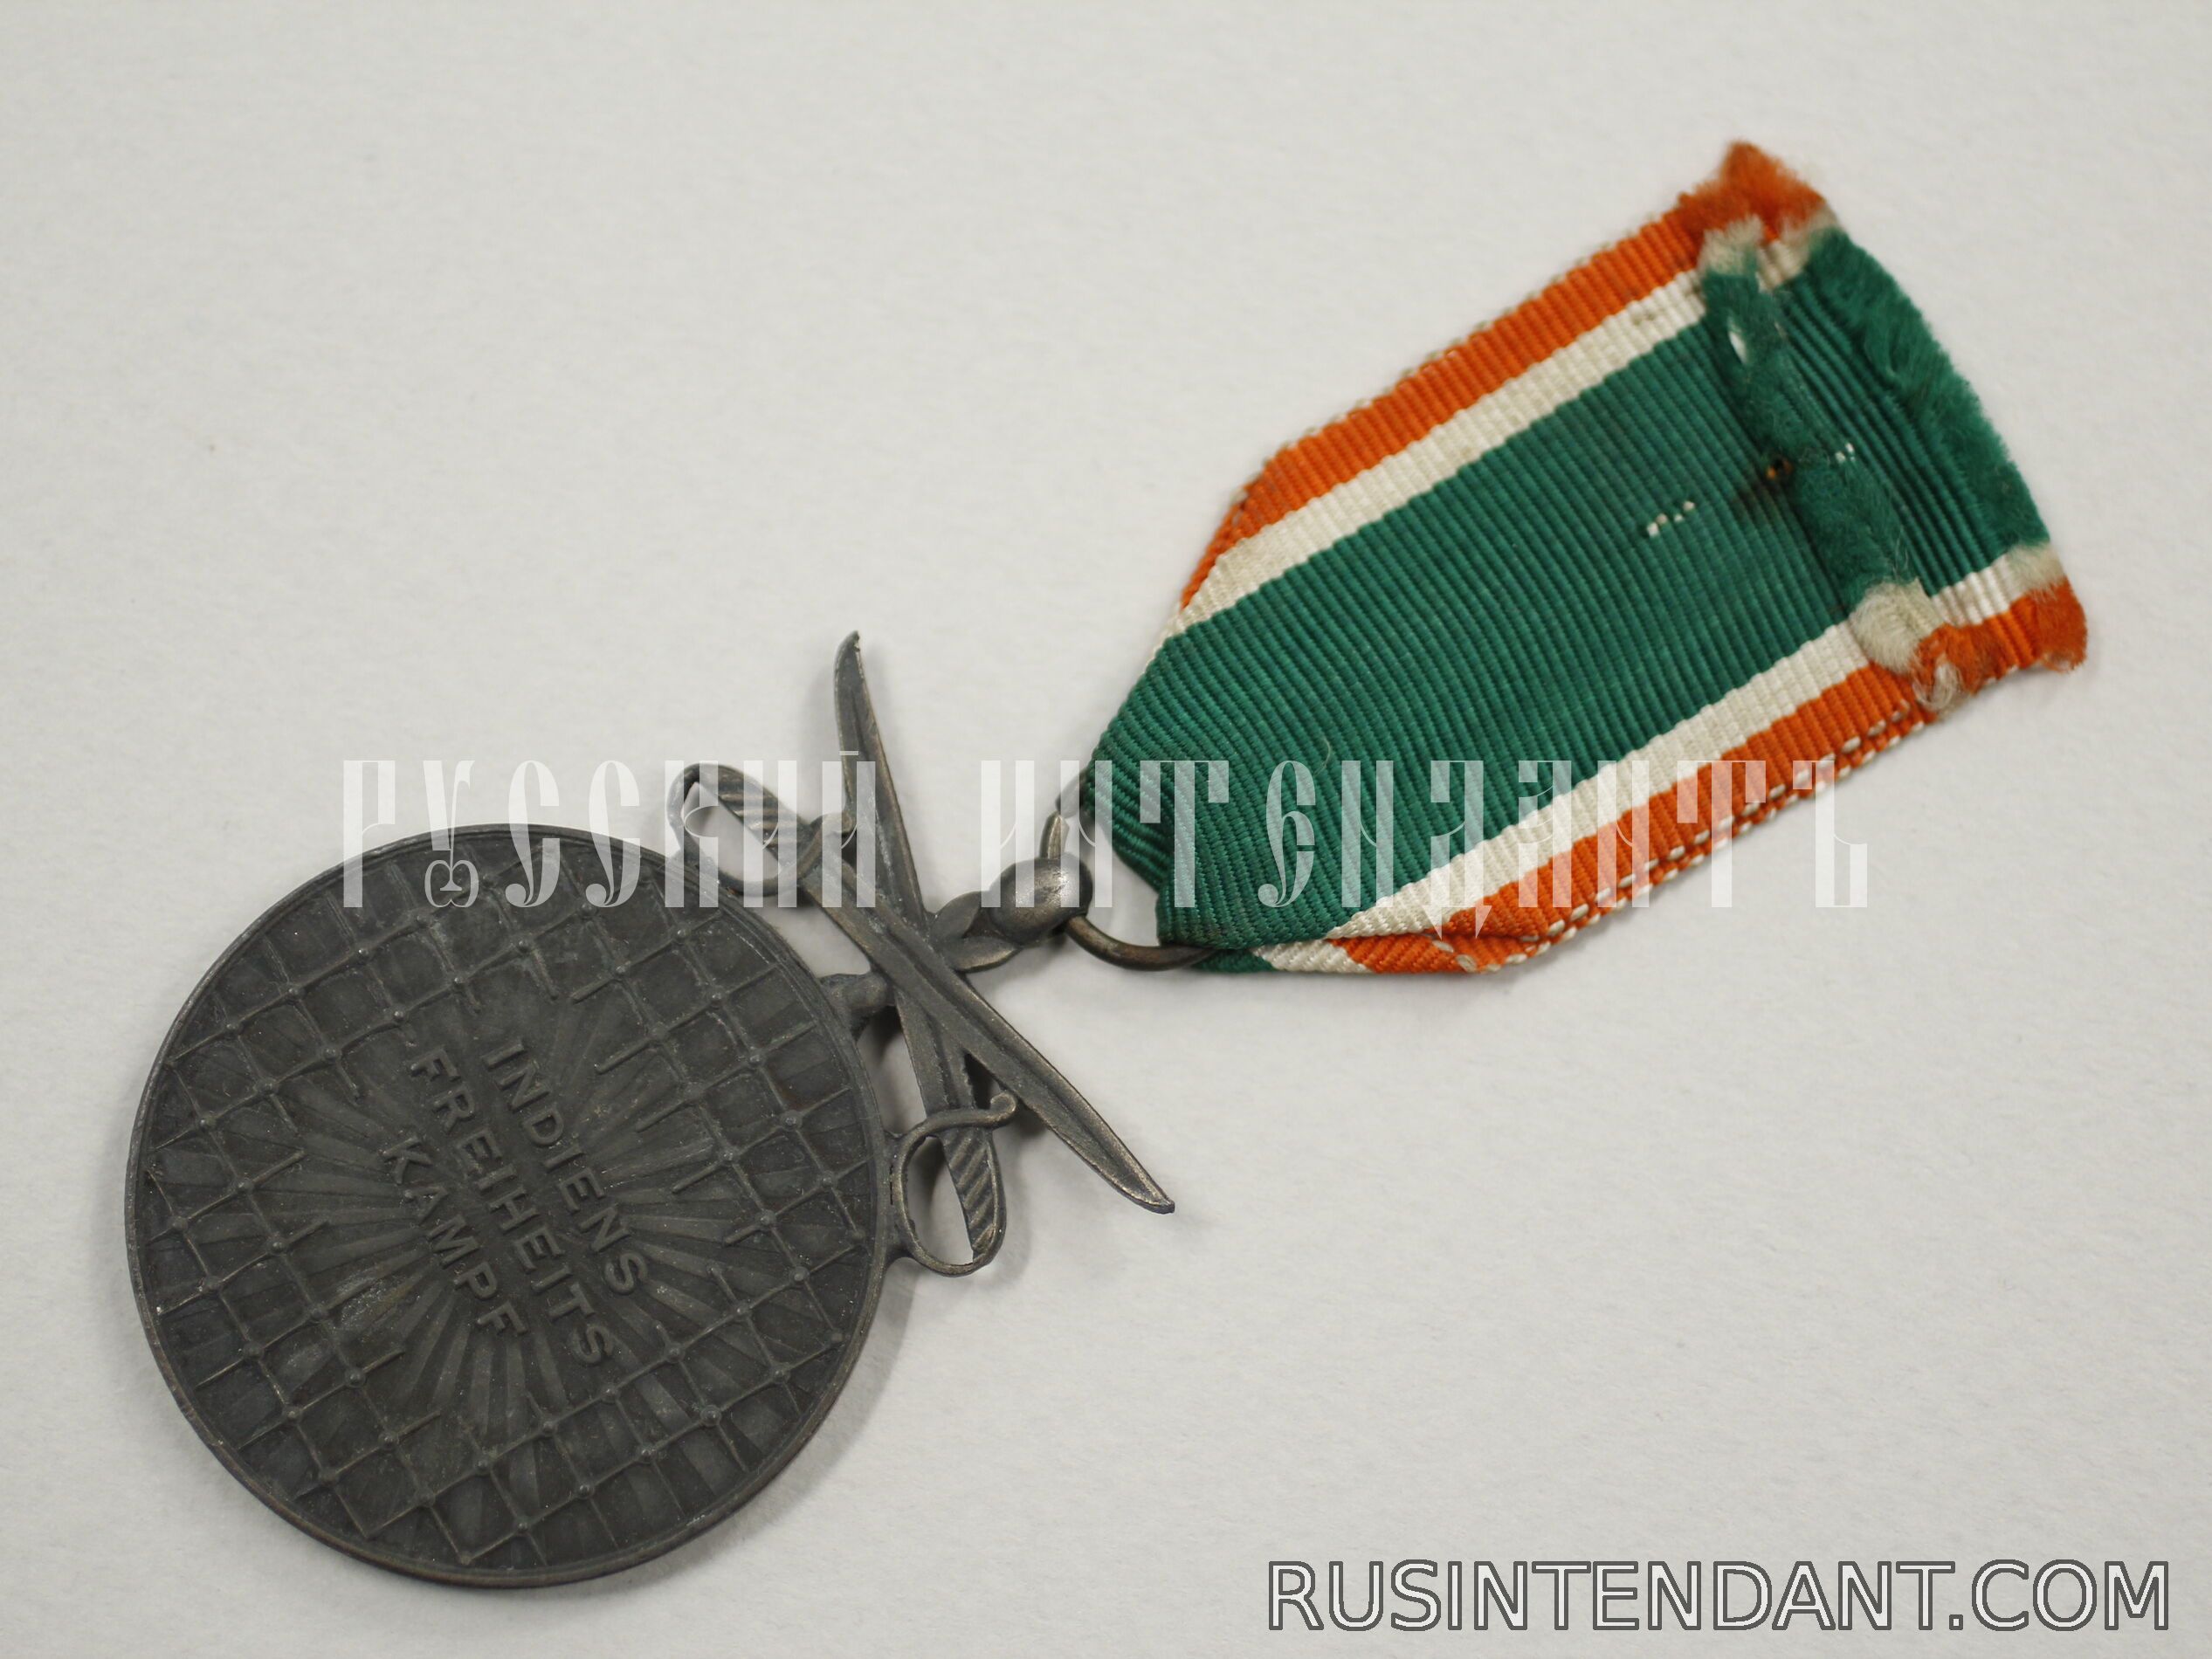 Фото 4: Медаль "Свободная Индия" с мечами 